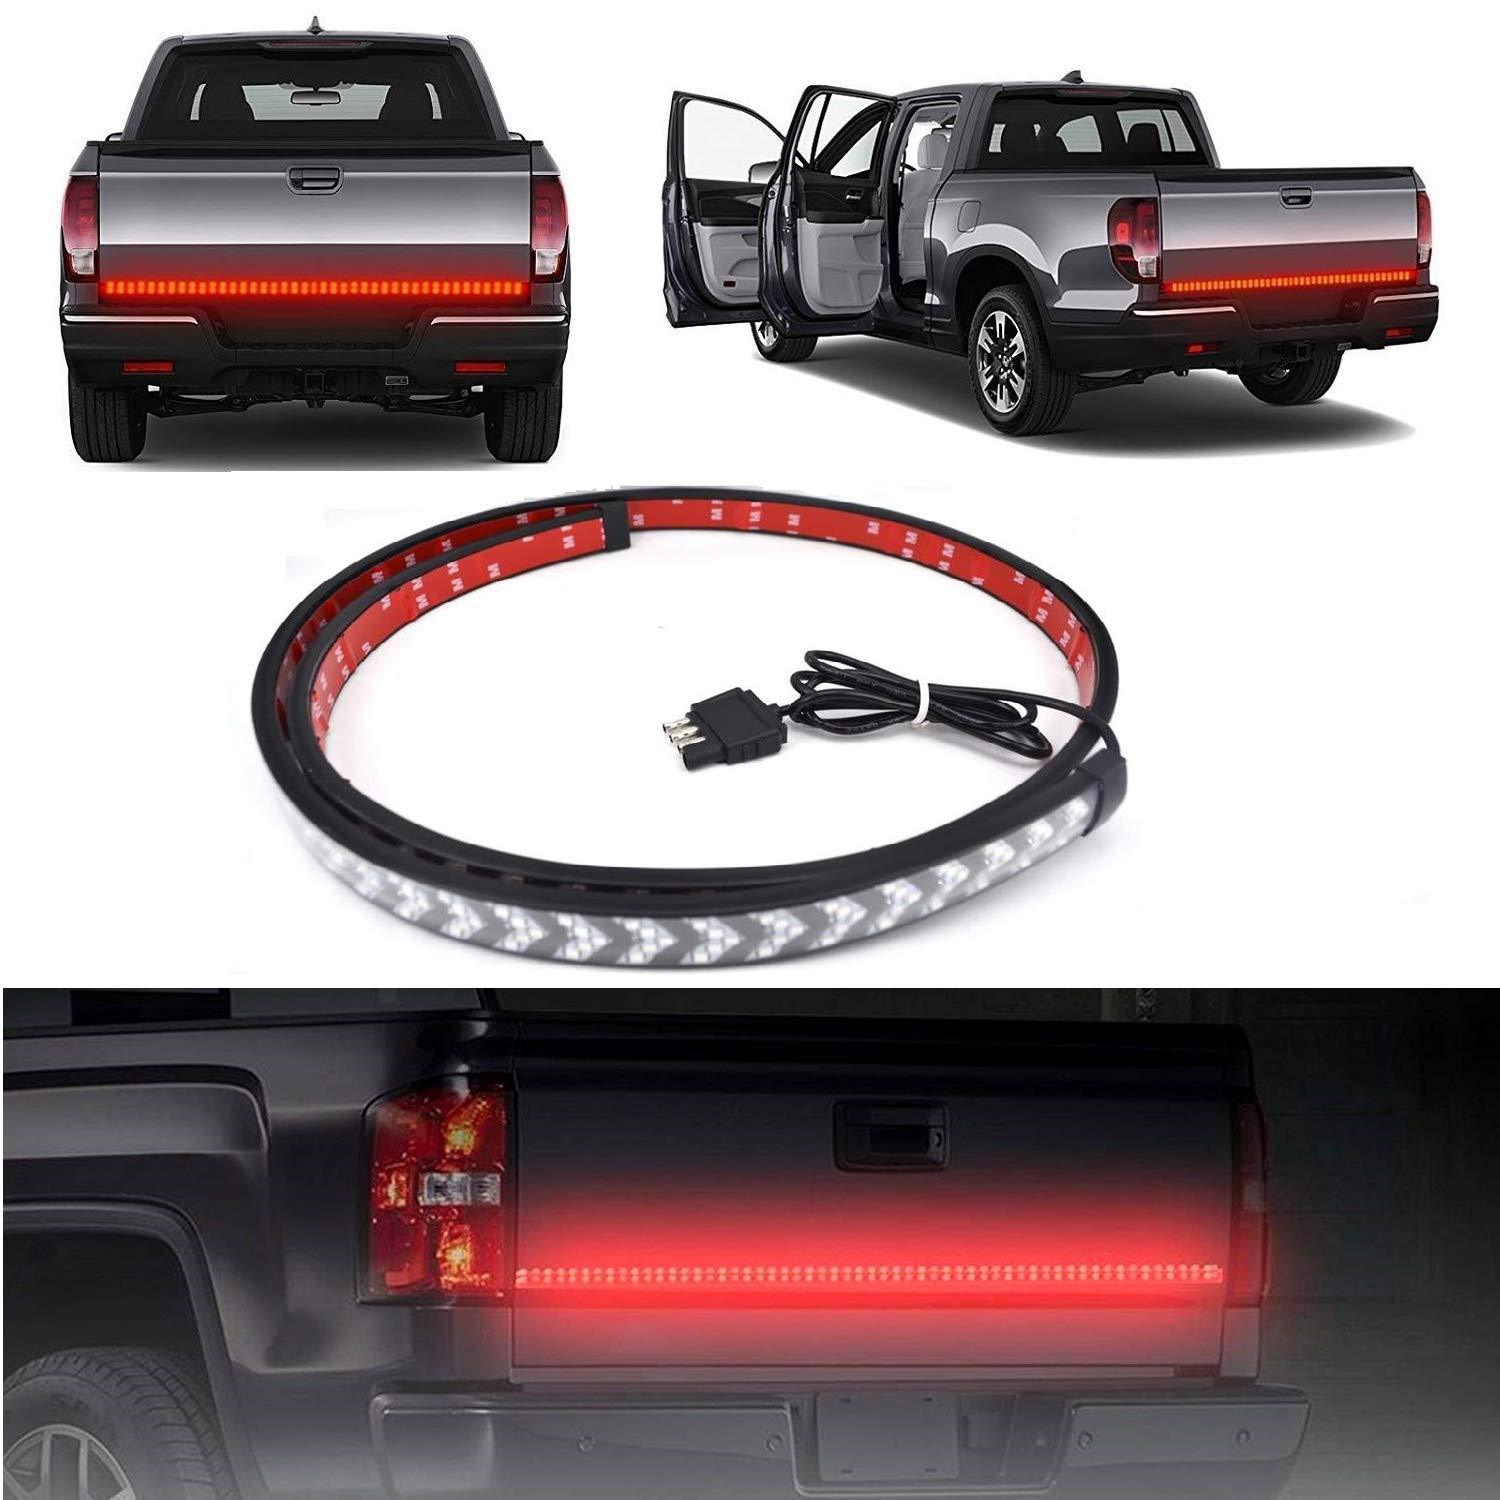 新款152cm掃描皮卡燈帶 刹車轉向紅色擋板燈帶 汽車裝飾燈條